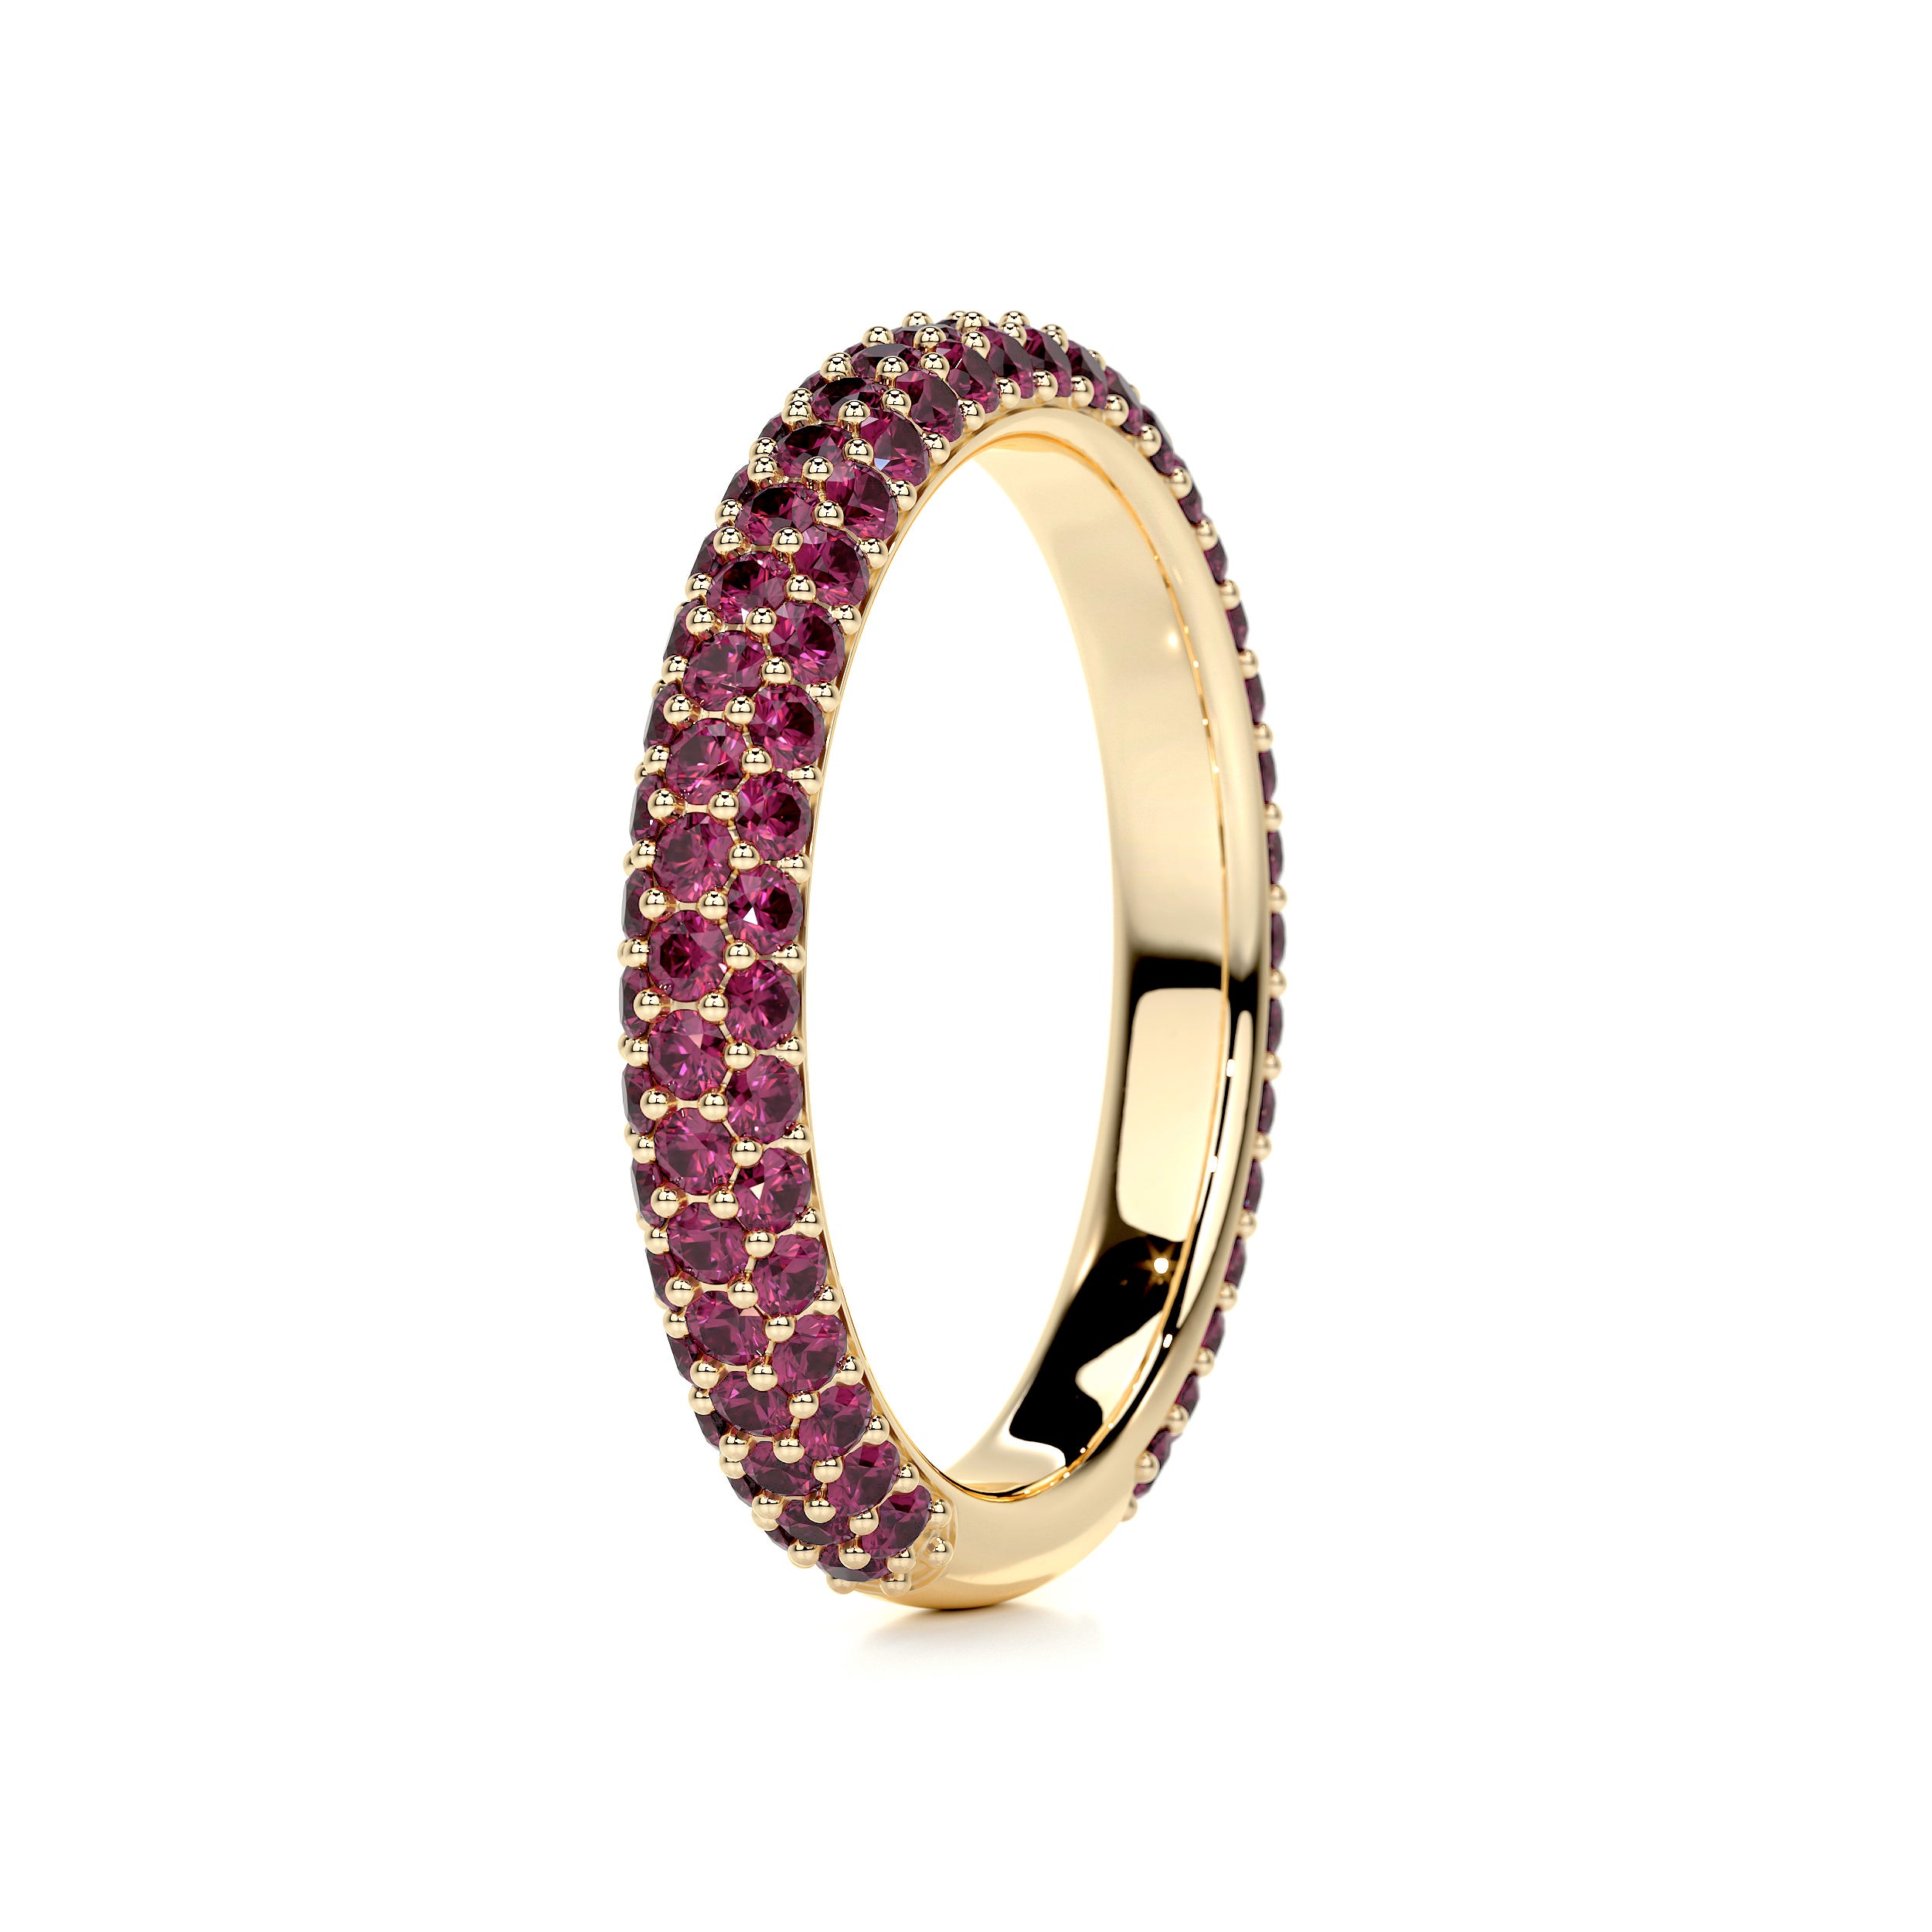 Emma Red Gemstone Wedding Ring   (1.25 Carat) -18K Yellow Gold